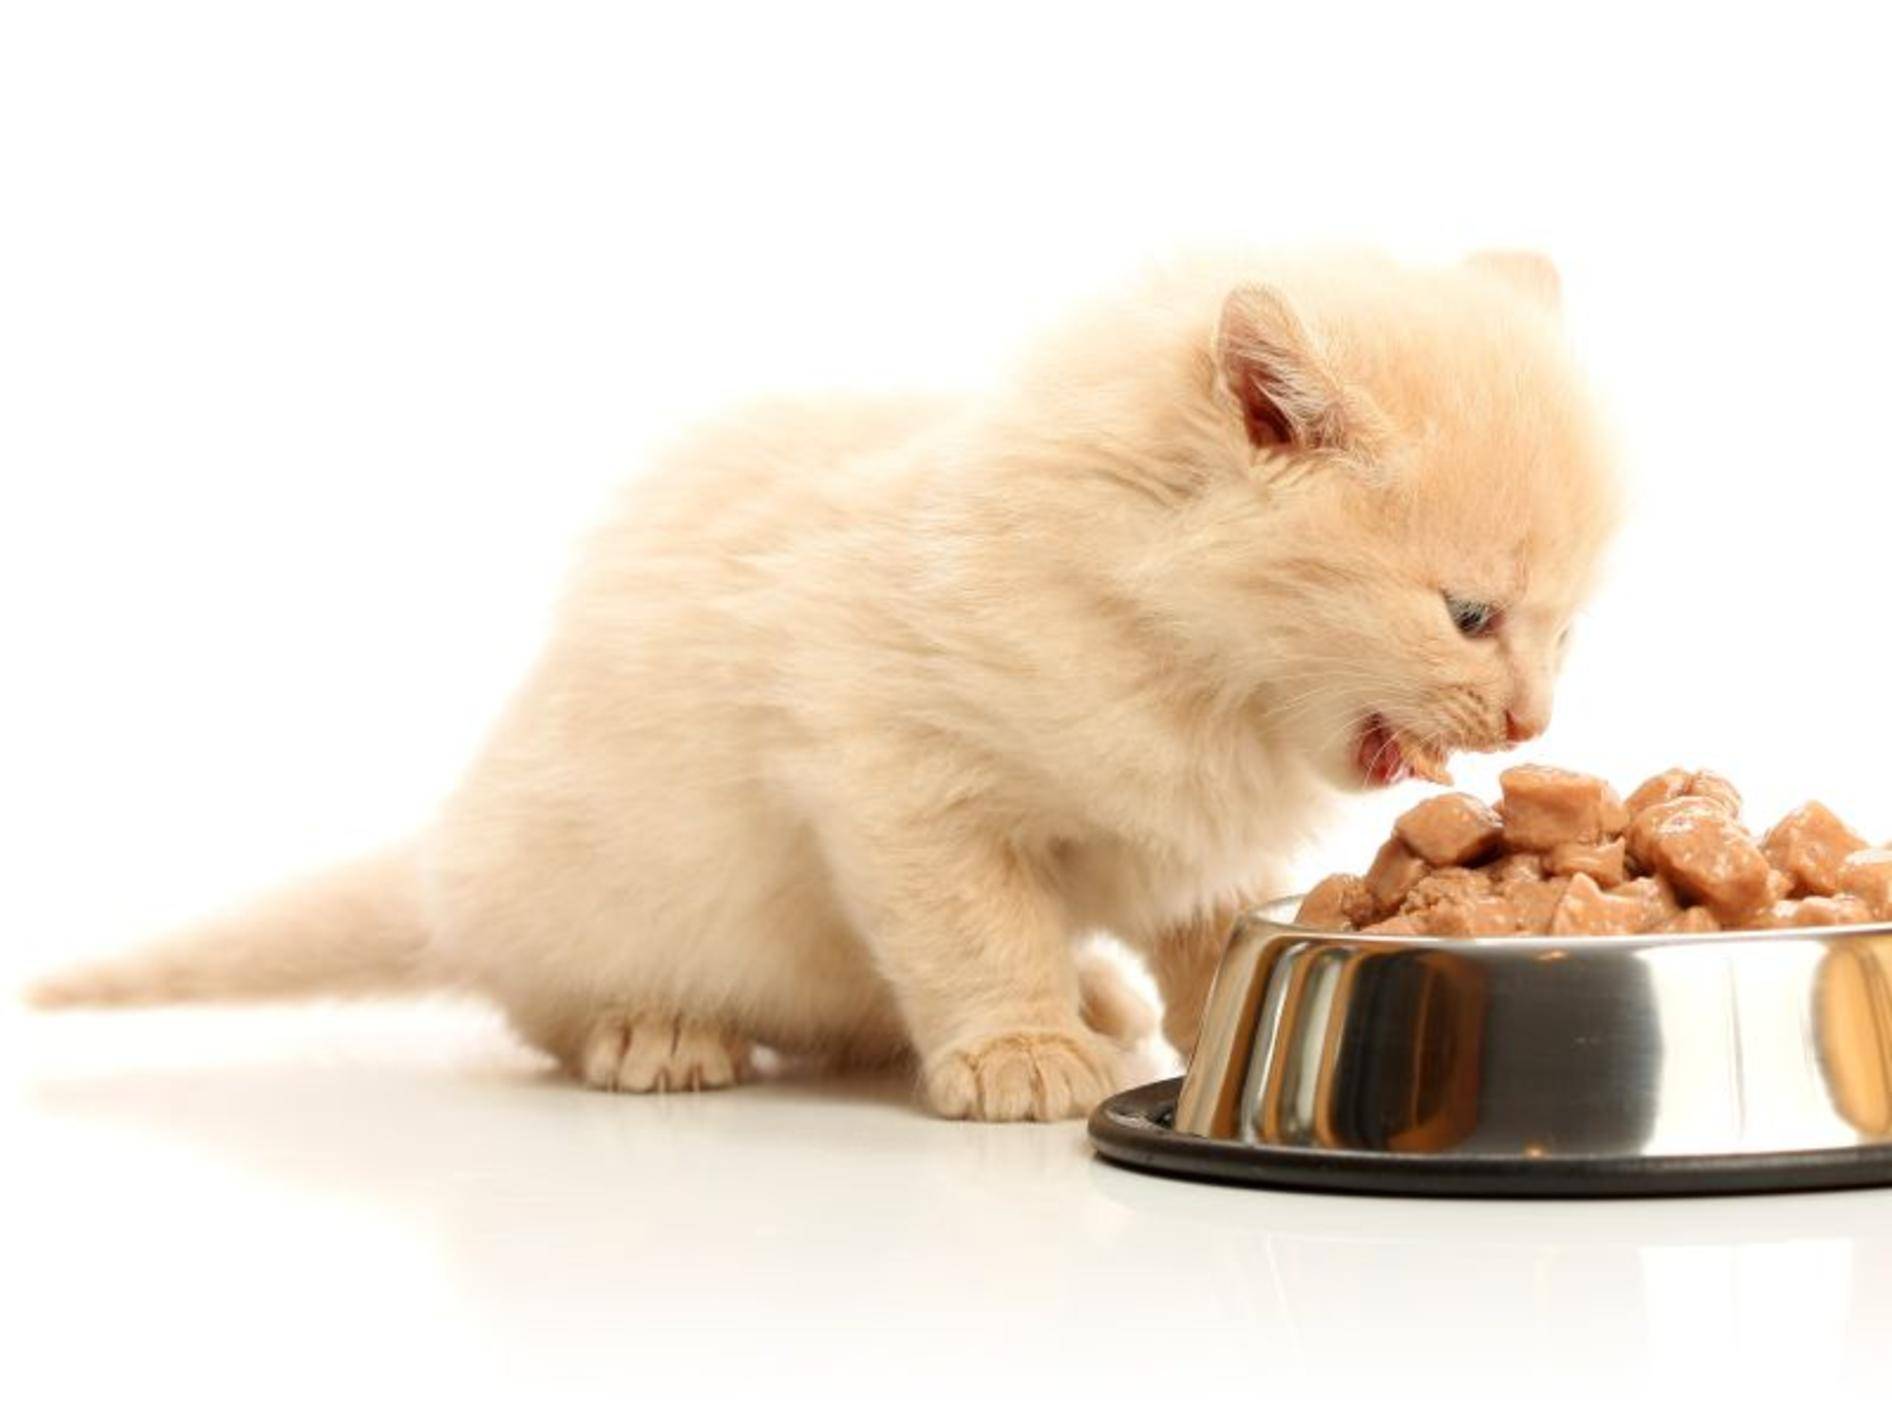 Kätzchen Nummer eins: "Wisst ihr, was ich lecker finde? Futter!!!" – Bild: Shutterstock / 6493866629